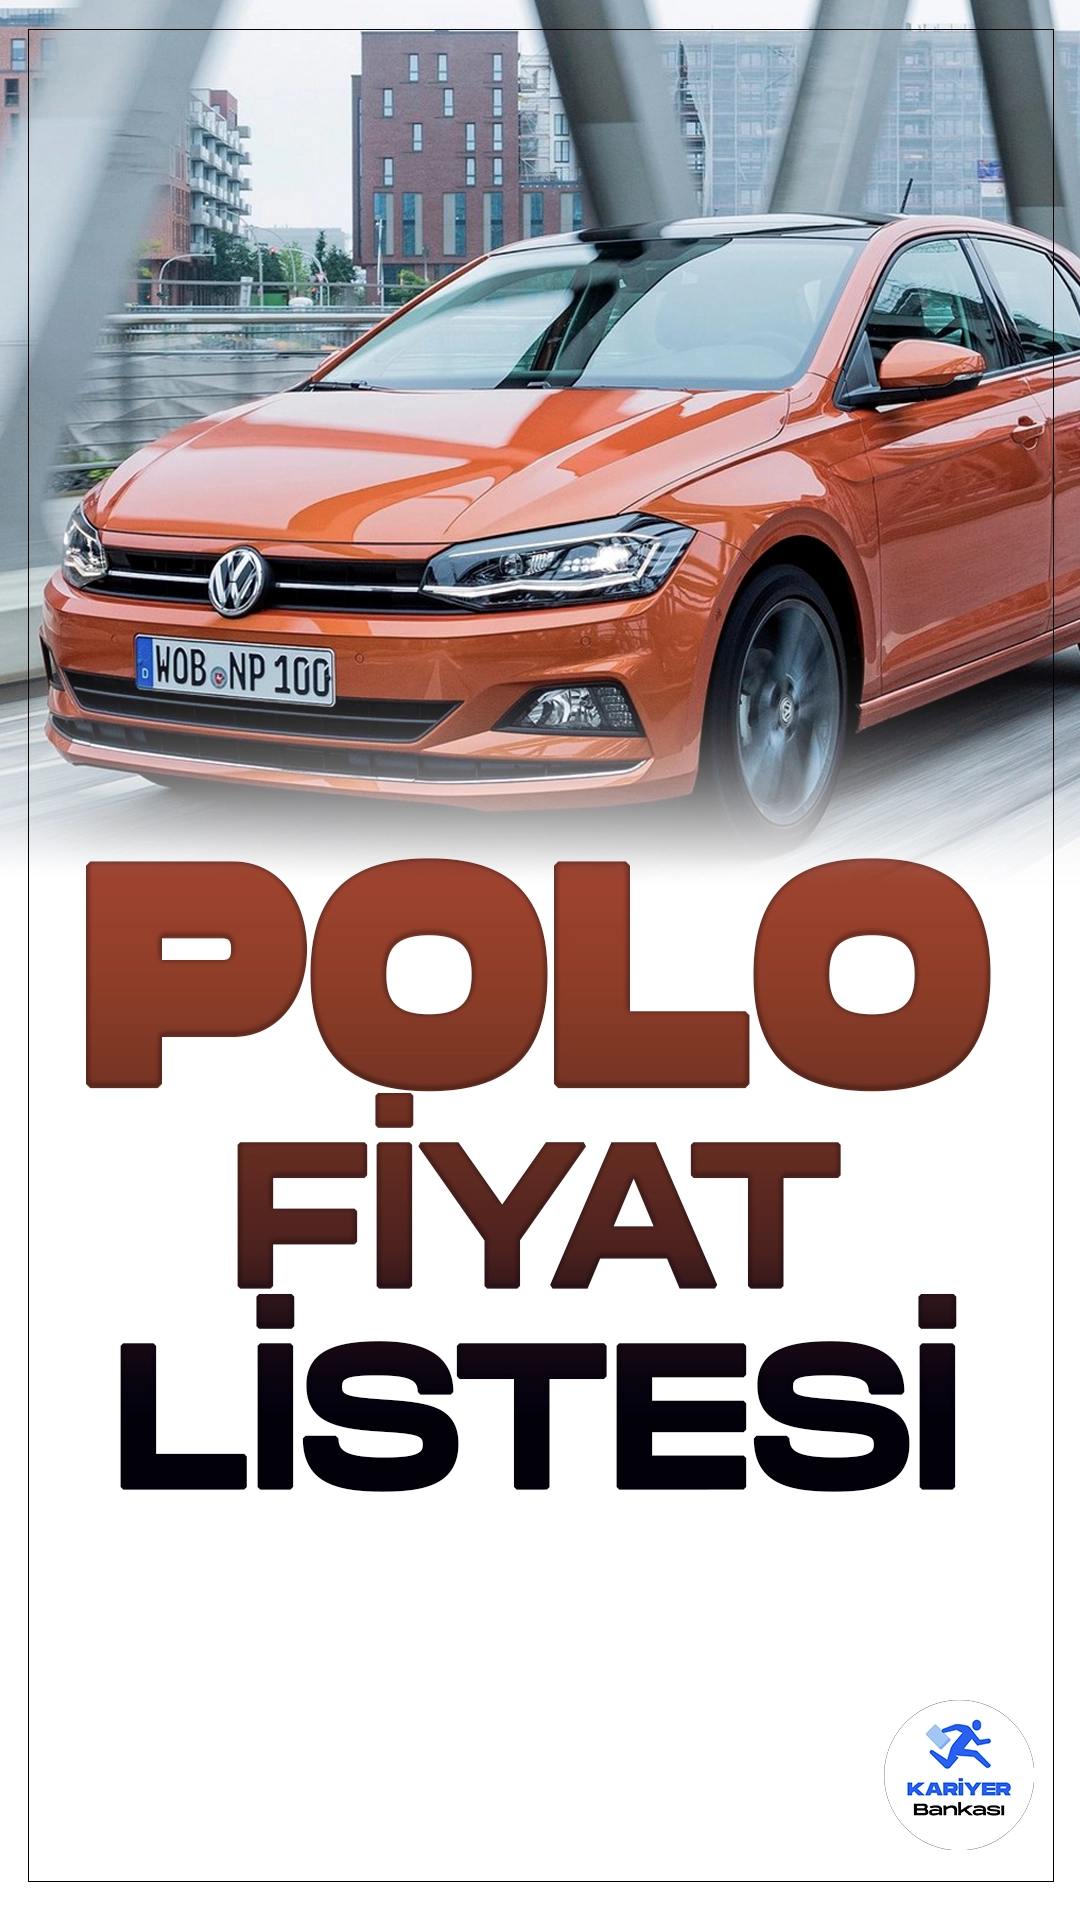 Volkswagen Polo Nisan 2024 Fiyat Listesi Yayımlandı.Volkswagen'un kompakt hatchback modeli Polo, Nisan 2024 fiyat listesi ile güncellendi. Yeni fiyatlar, otomobil severler arasında heyecan yarattı. Yükselen dolar kuru ve döviz fiyatlarına paralel olarak, Polo'nun fiyatlarında artışlar görüldü. Mart ayına kıyasla, Nisan ayında Polo'nun fiyatlarında belirgin bir yükseliş kaydedildi.